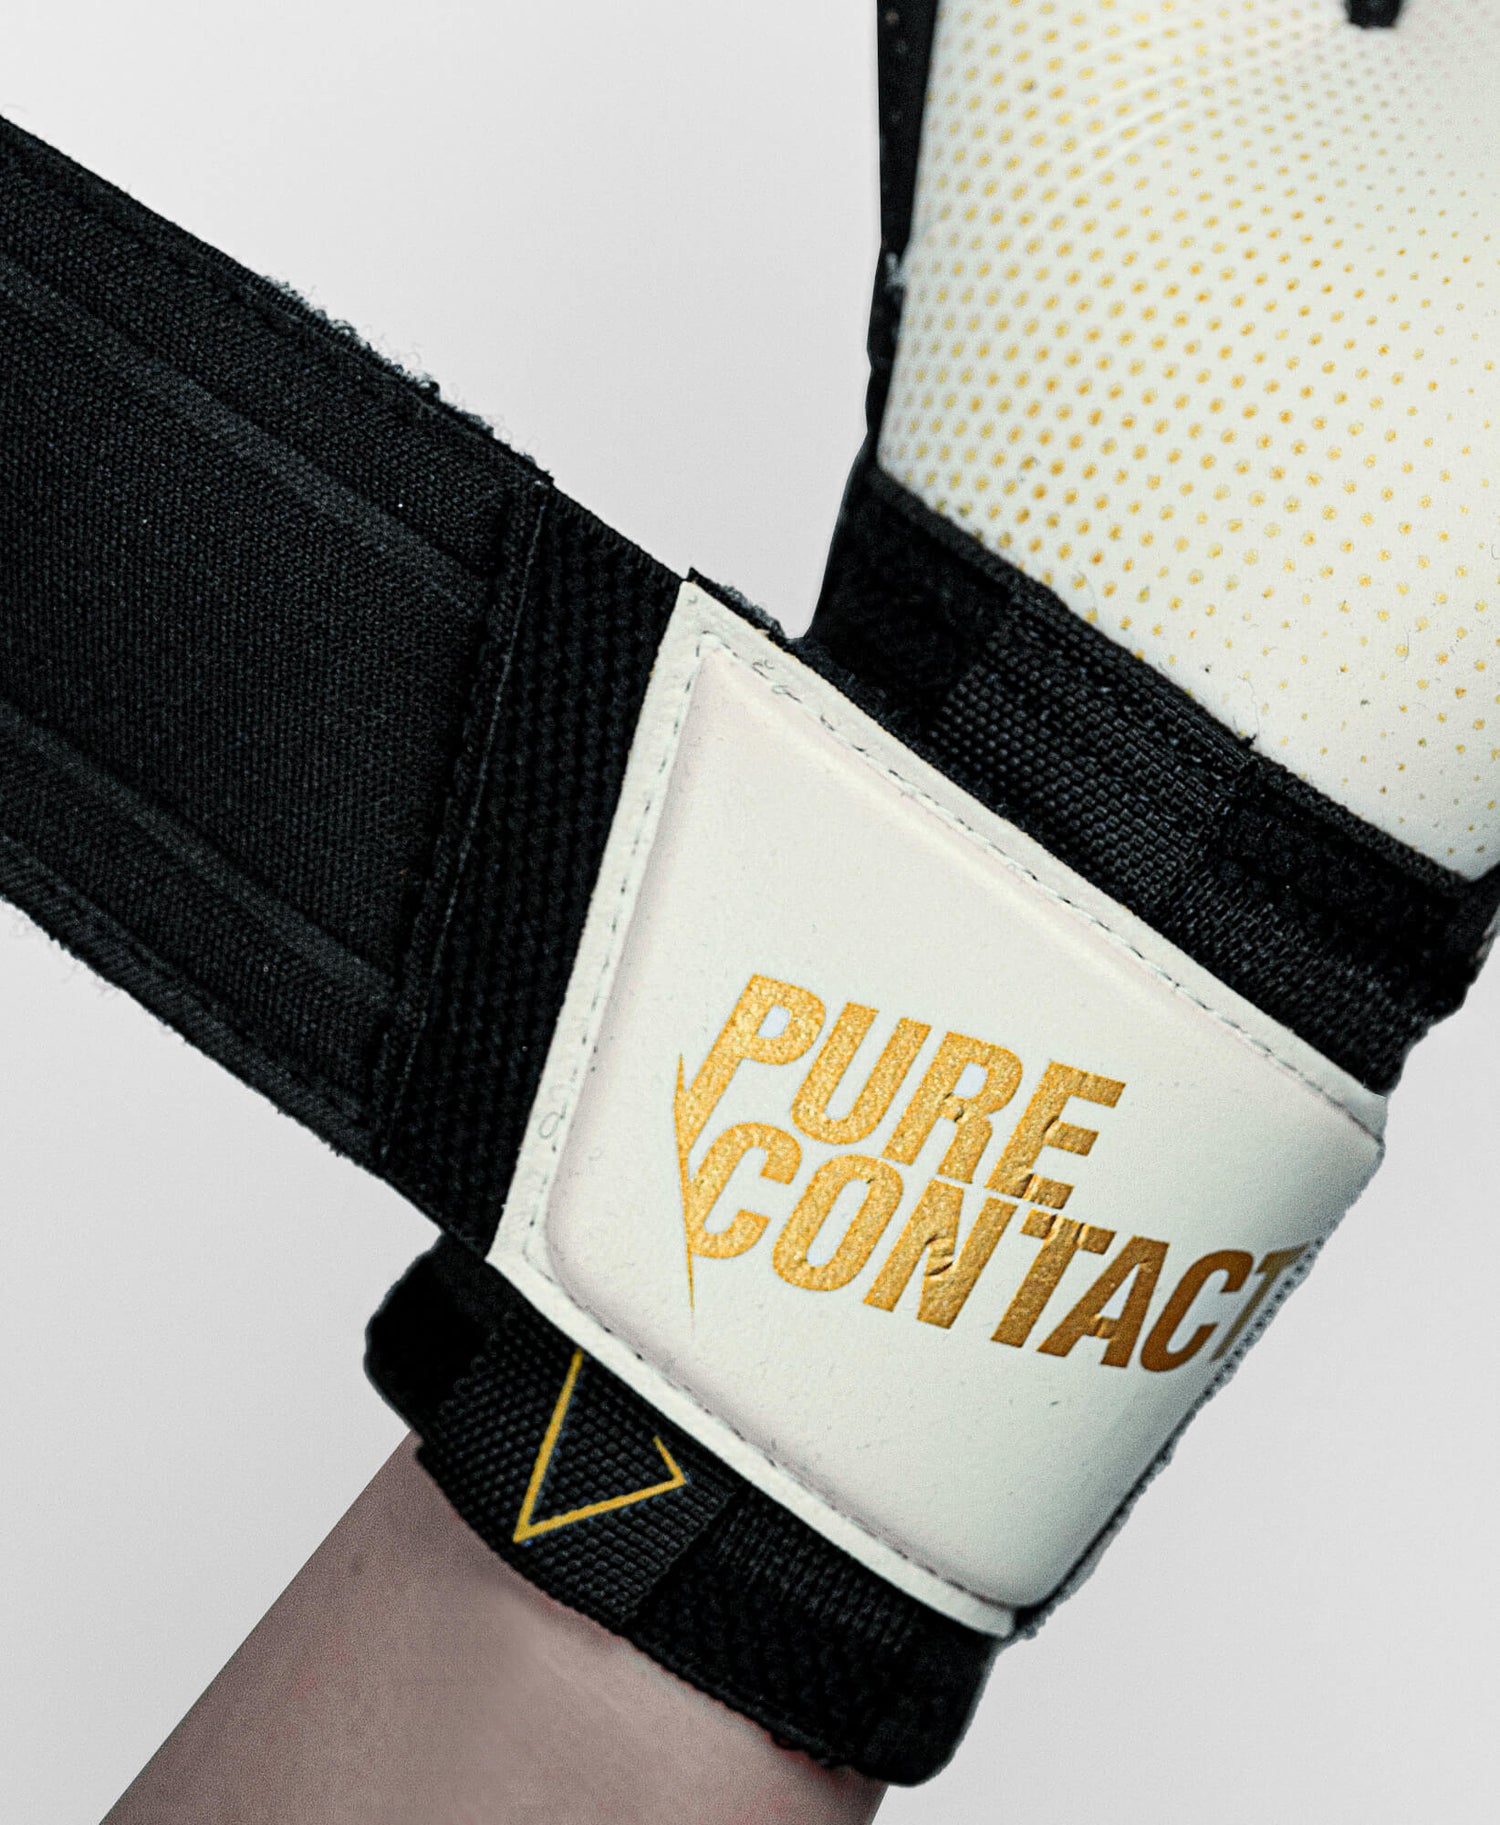 Reusch Pure Contact Gold X Glueprint Goalkeeper Gloves - Black-Gold (Detail 3)